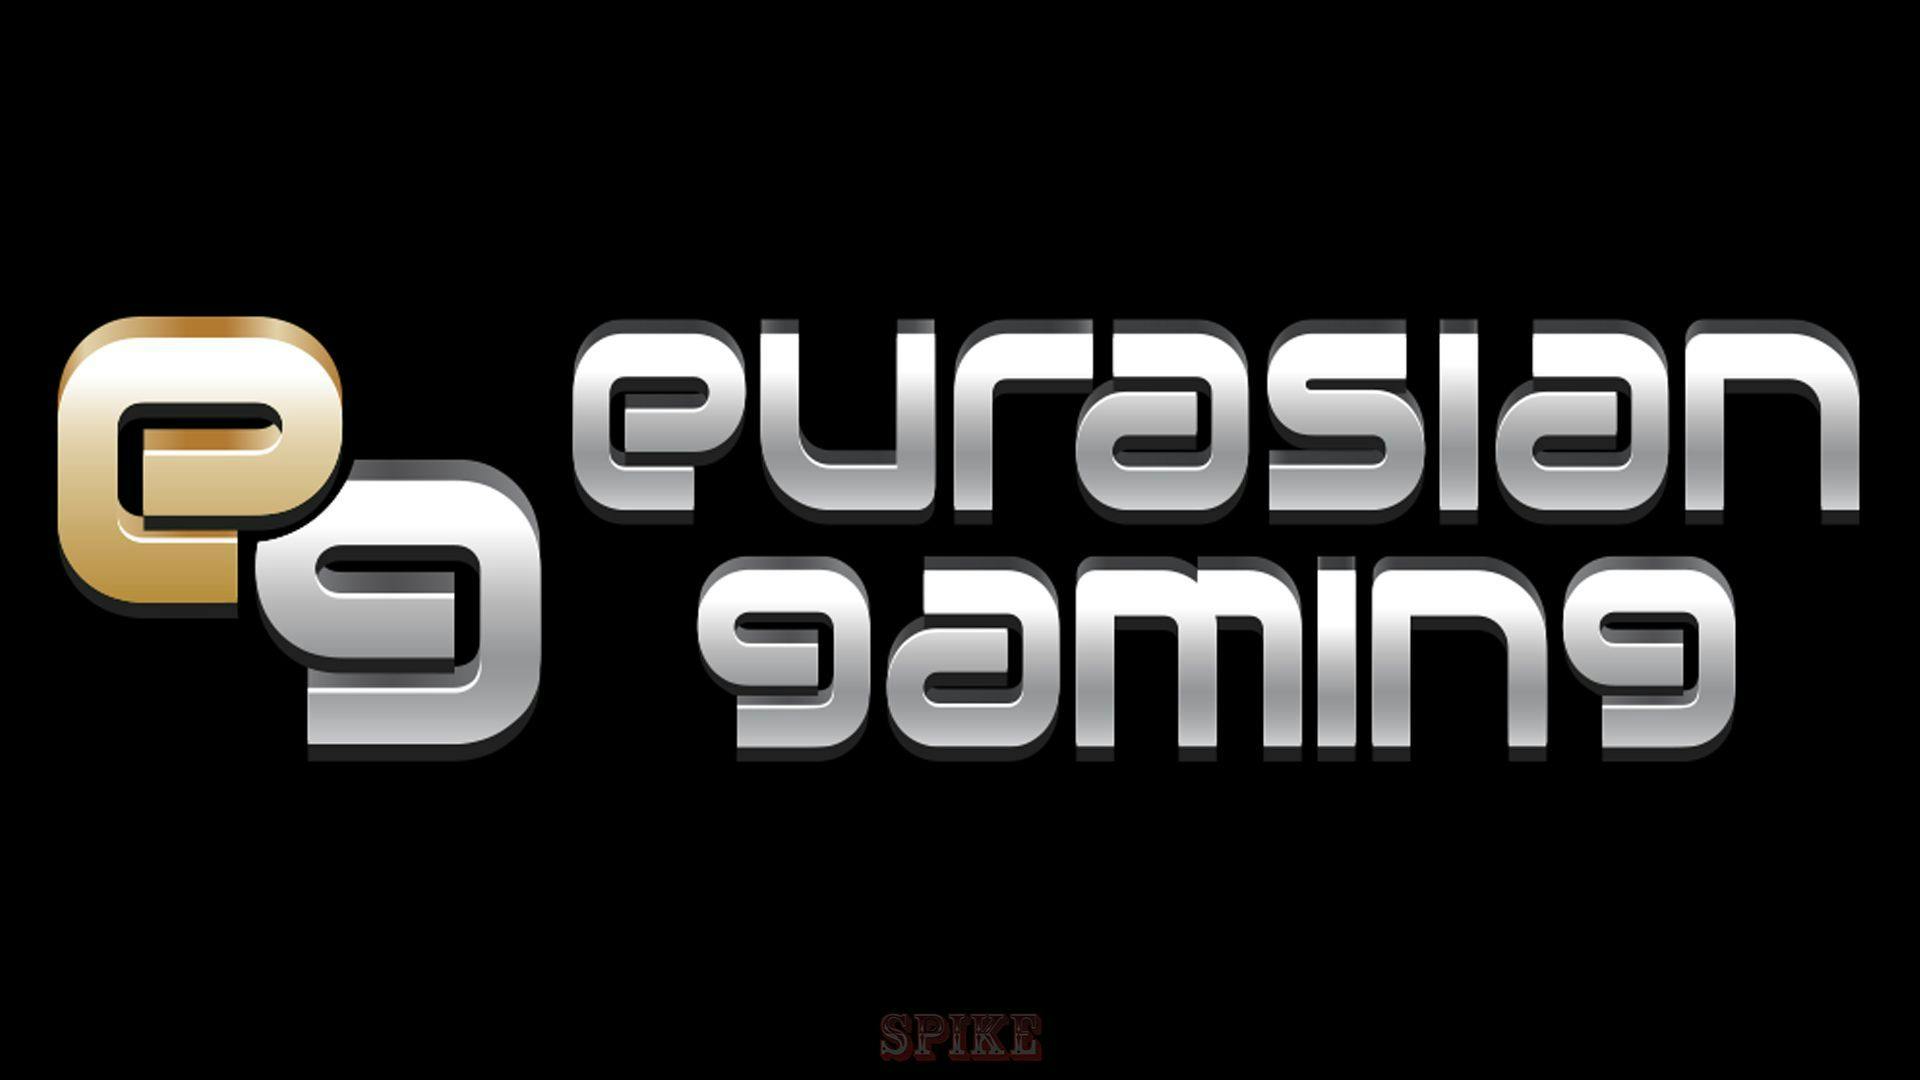 Eurasian Gaming Software Provider Free Slots